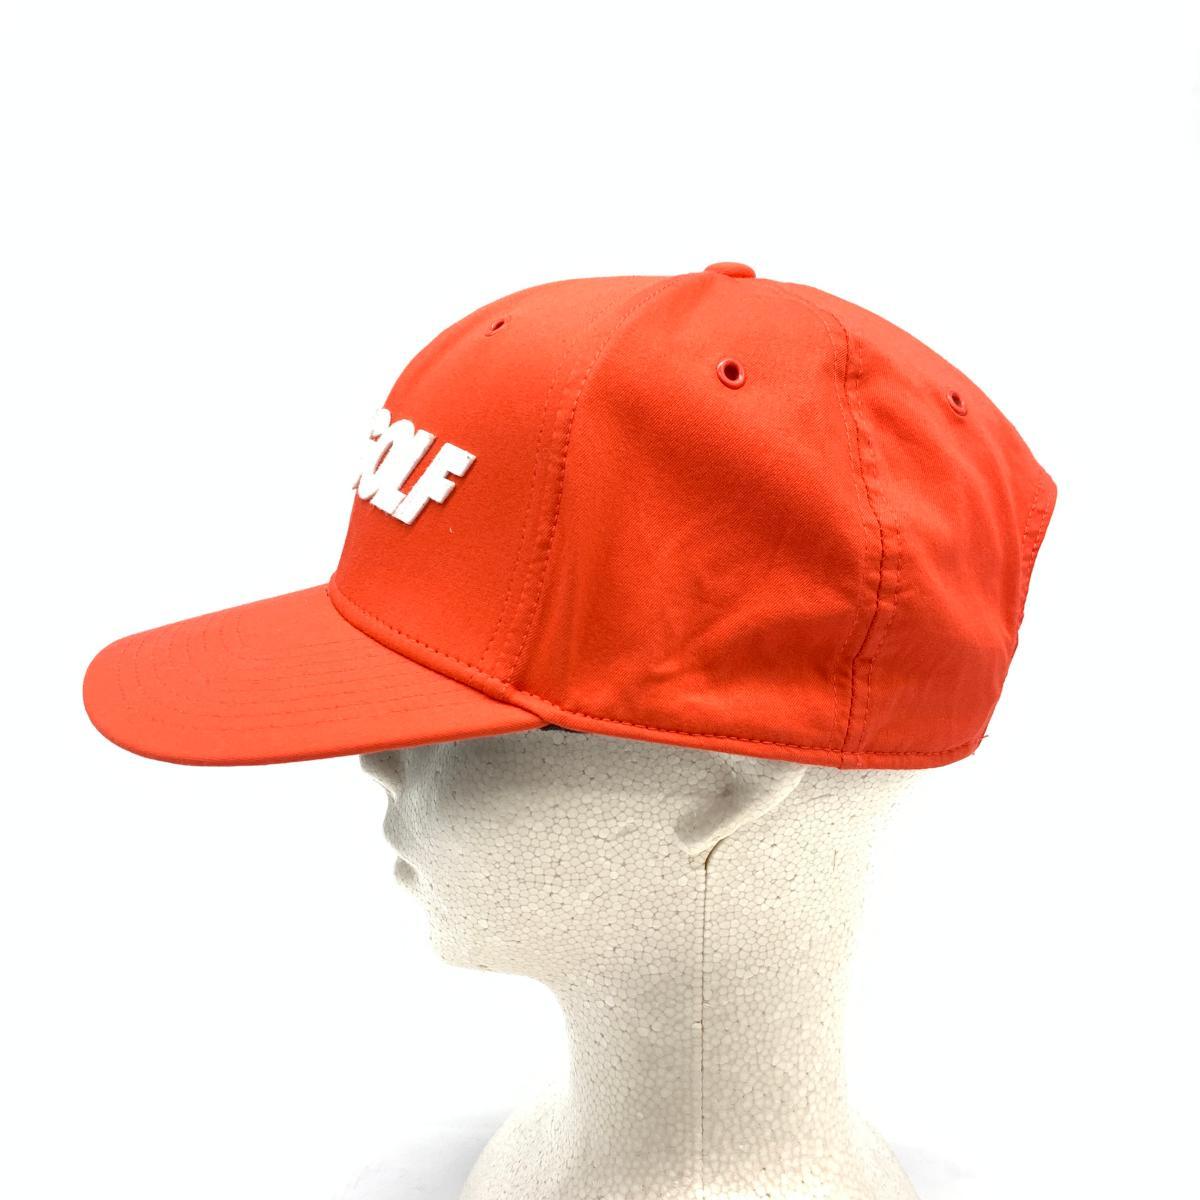 Nikegolf ナイキゴルフ キャップ コットン Orange オレンジ メンズ 帽子 服飾小物 ナイキ 売買されたオークション情報 Yahooの商品情報をアーカイブ公開 オークファン Aucfan Com